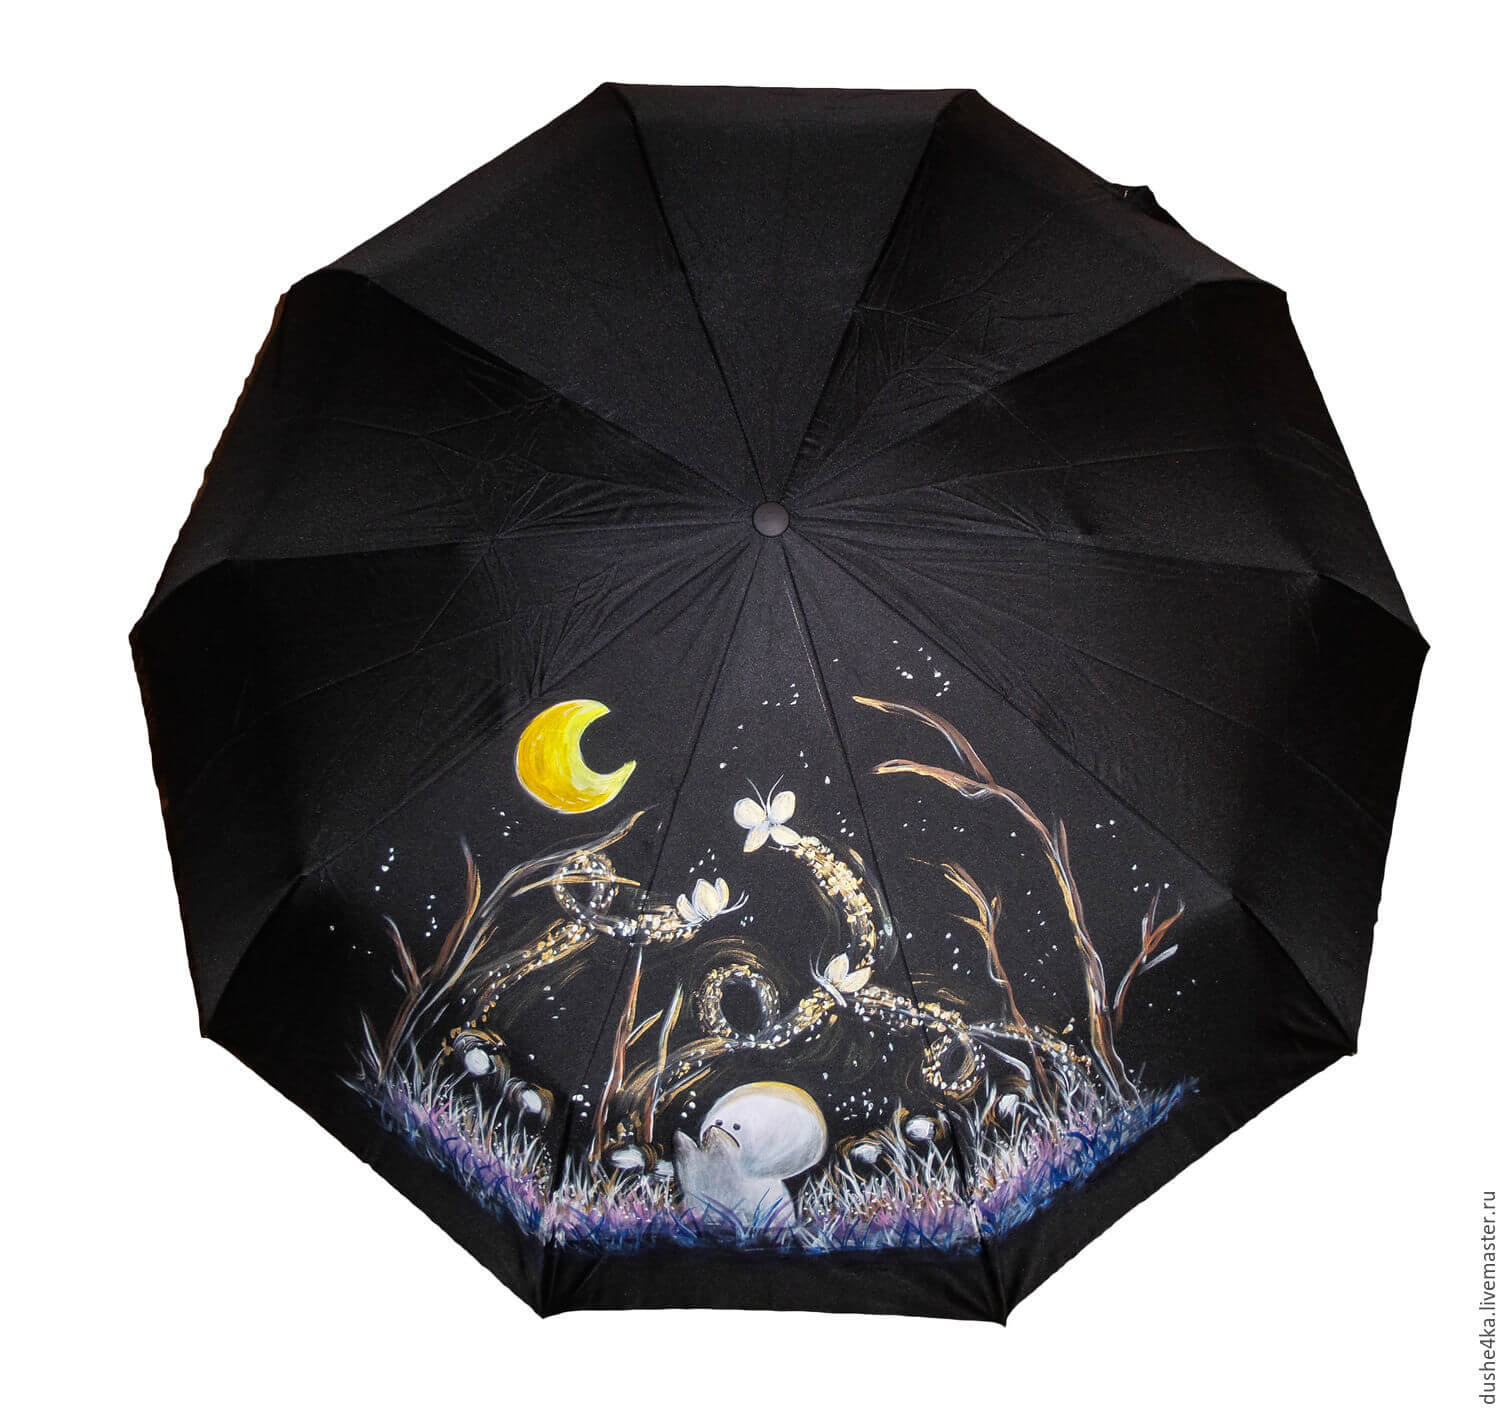 umbrella painting ideas